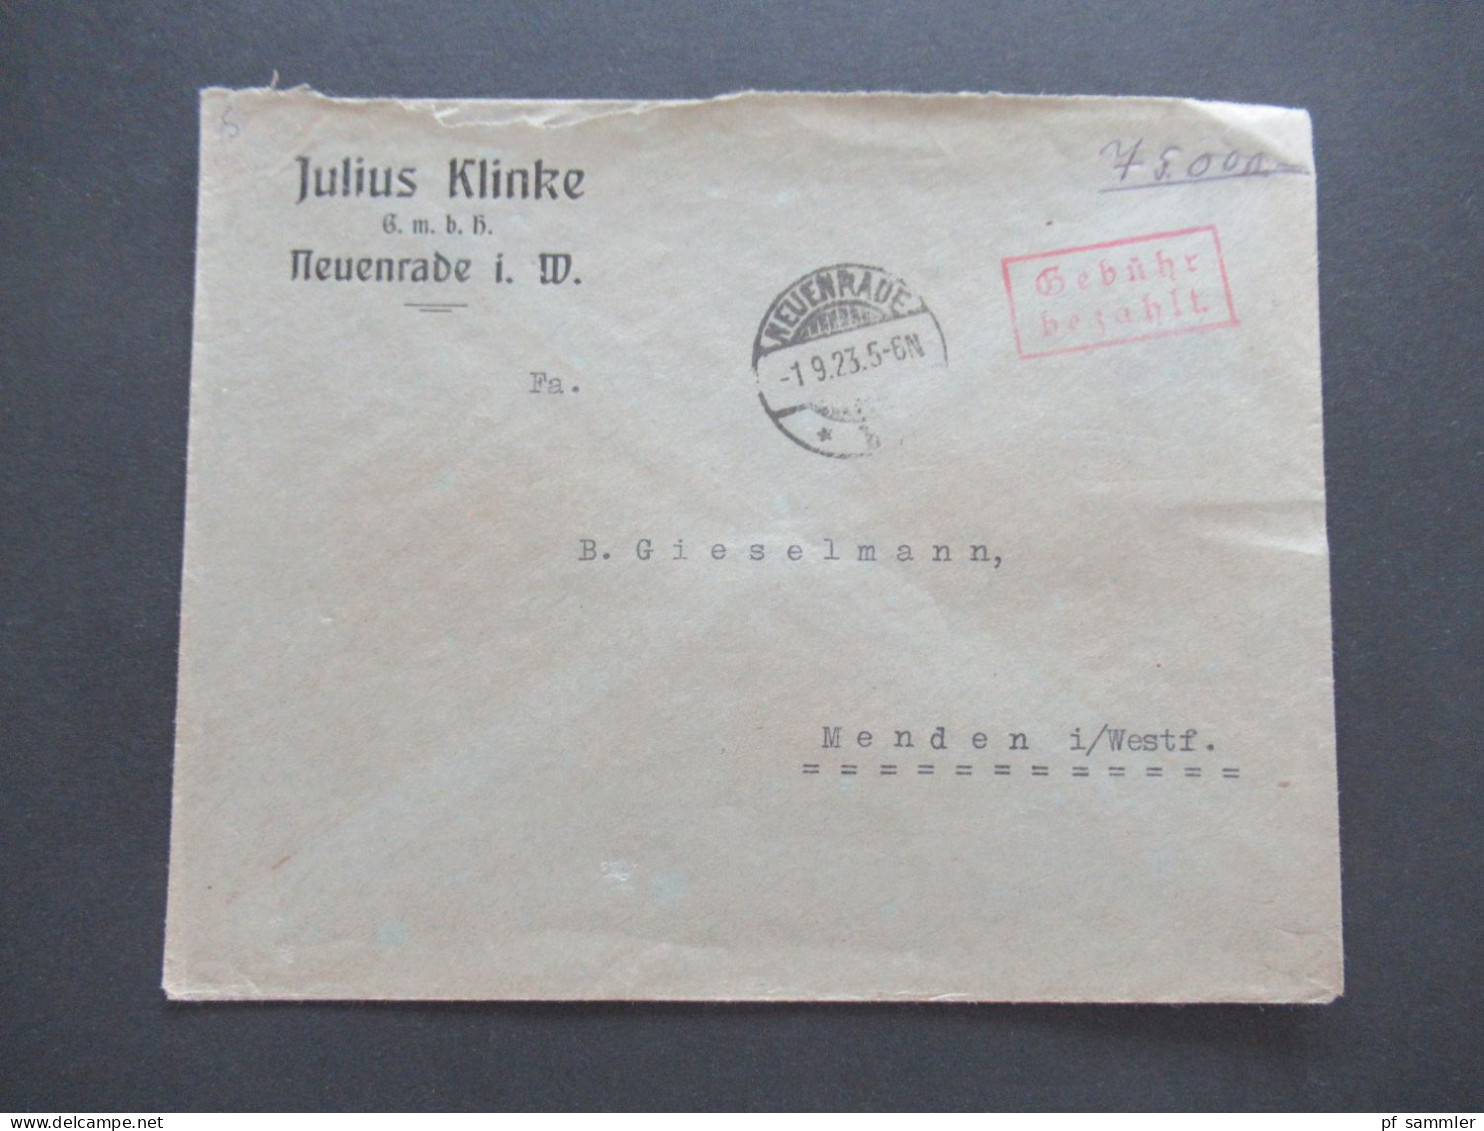 9.1923 Infla Notmaßnahme Porto Handschriftlich Roter Ra2 Gebühr Bezahlt Tagesstempel Neuenrade Umschlag Julius Klinke - Briefe U. Dokumente